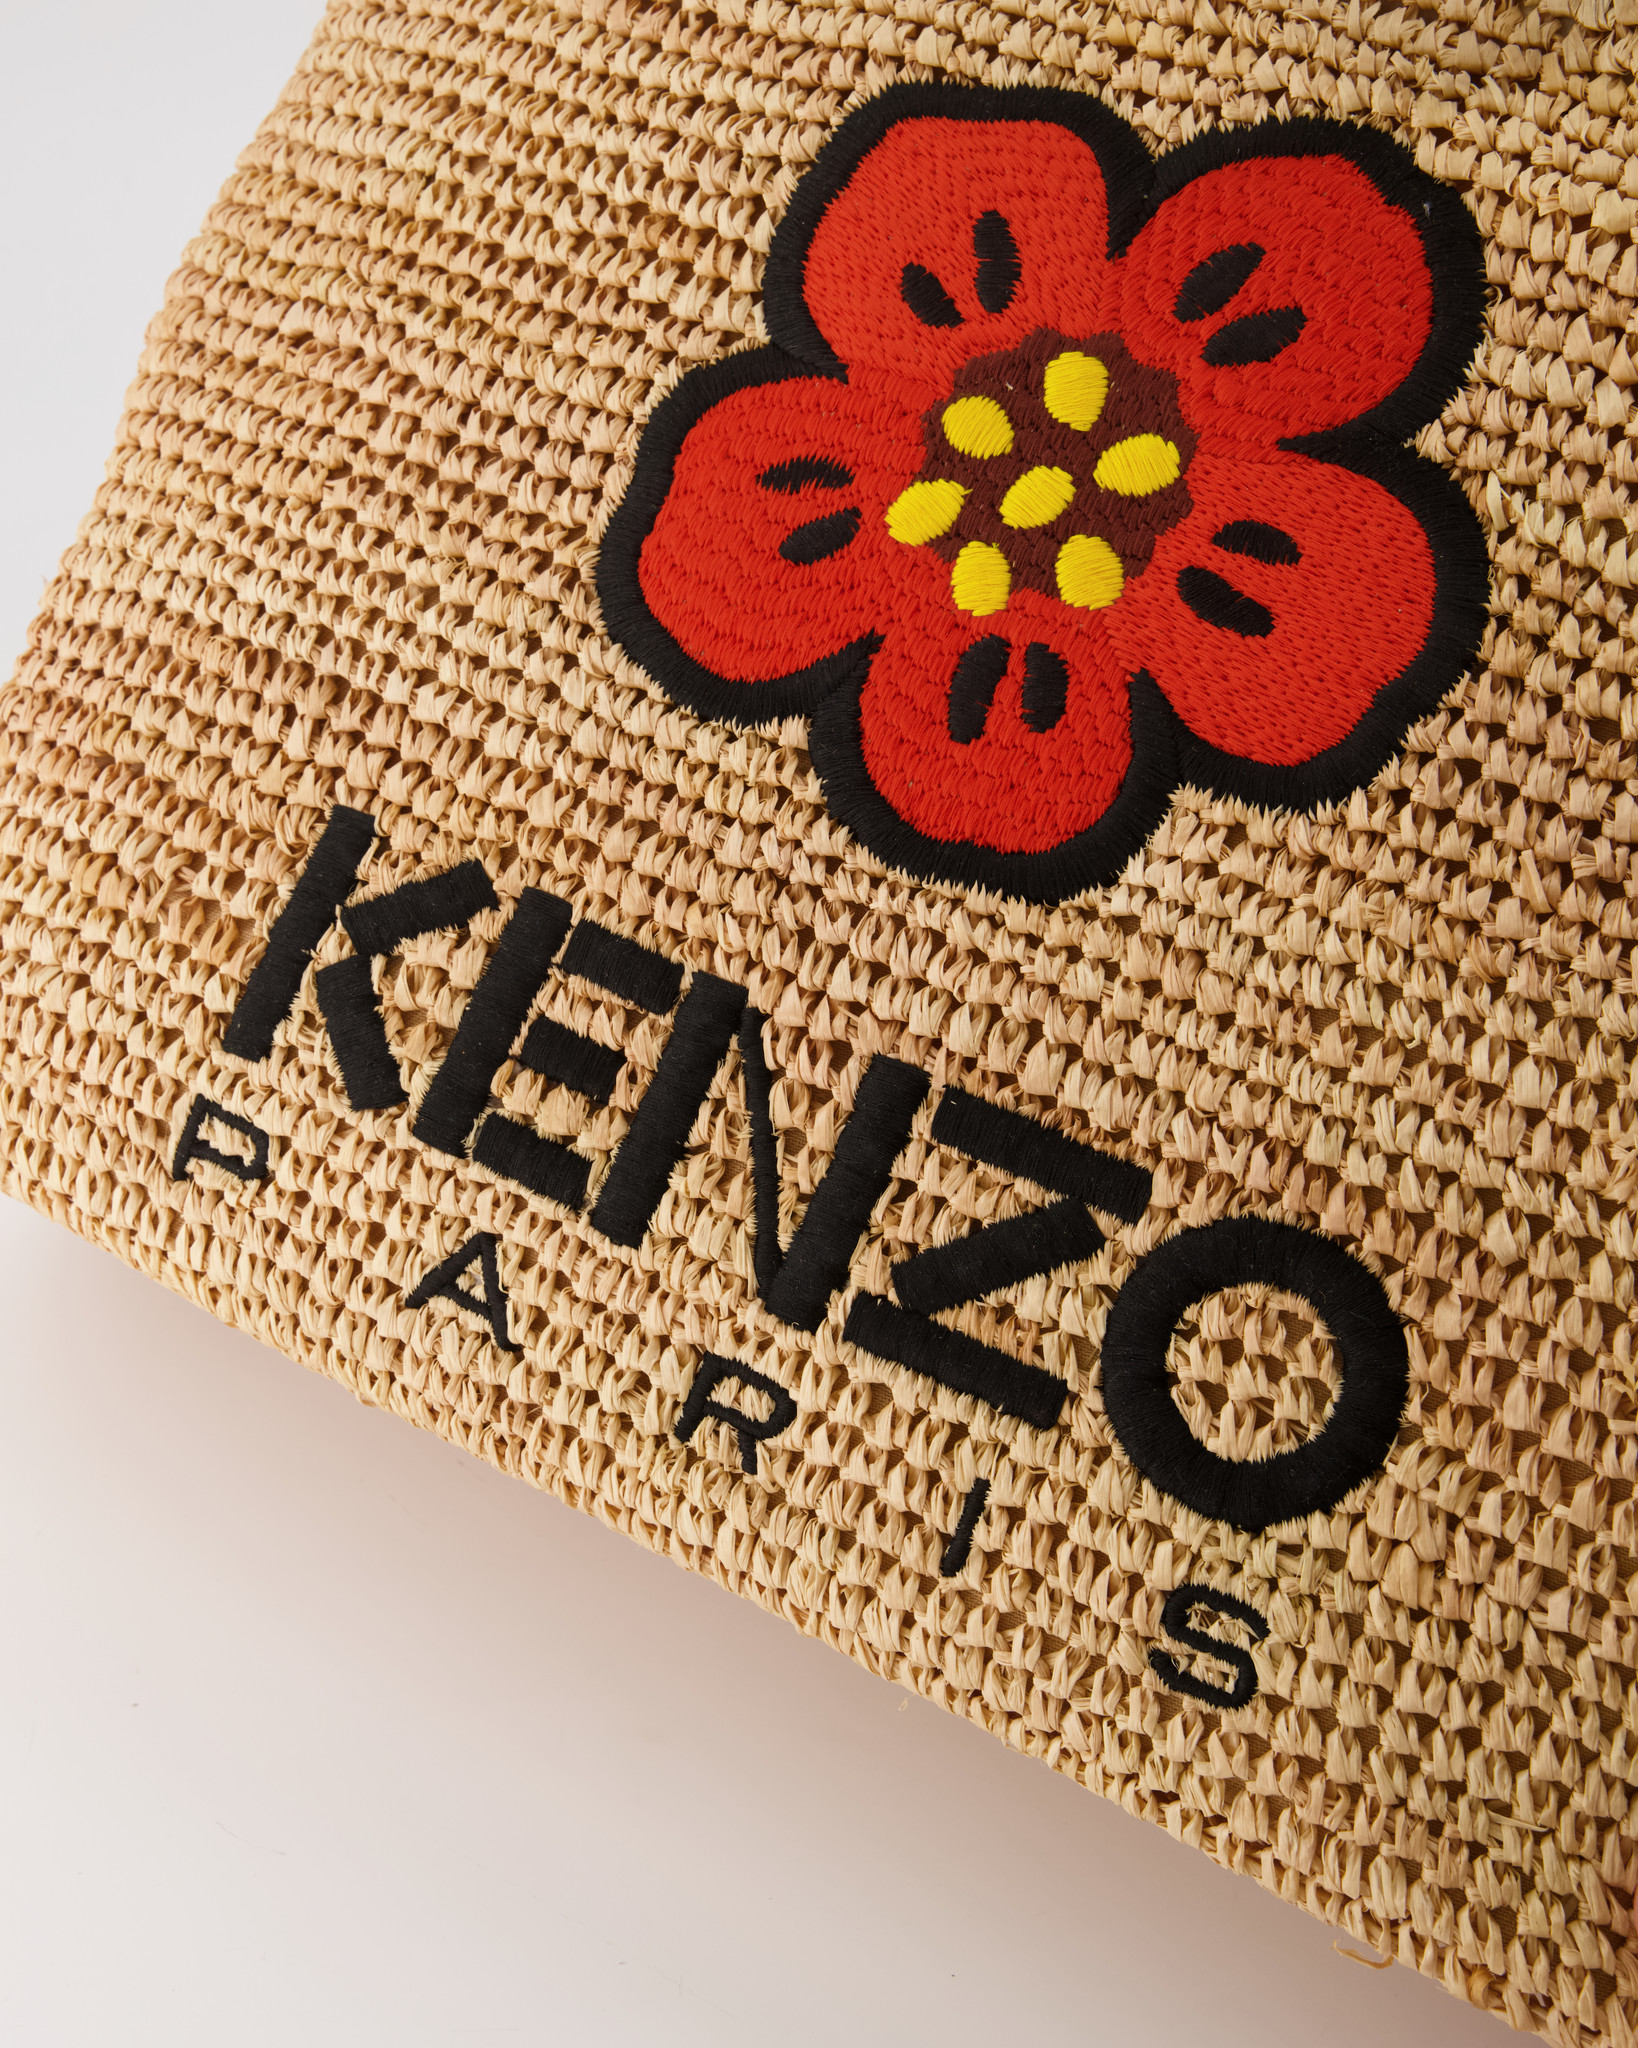 KENZO BY NIGO MAN BLACK TOTE BAGS - KENZO BY NIGO - TOTE BAGS